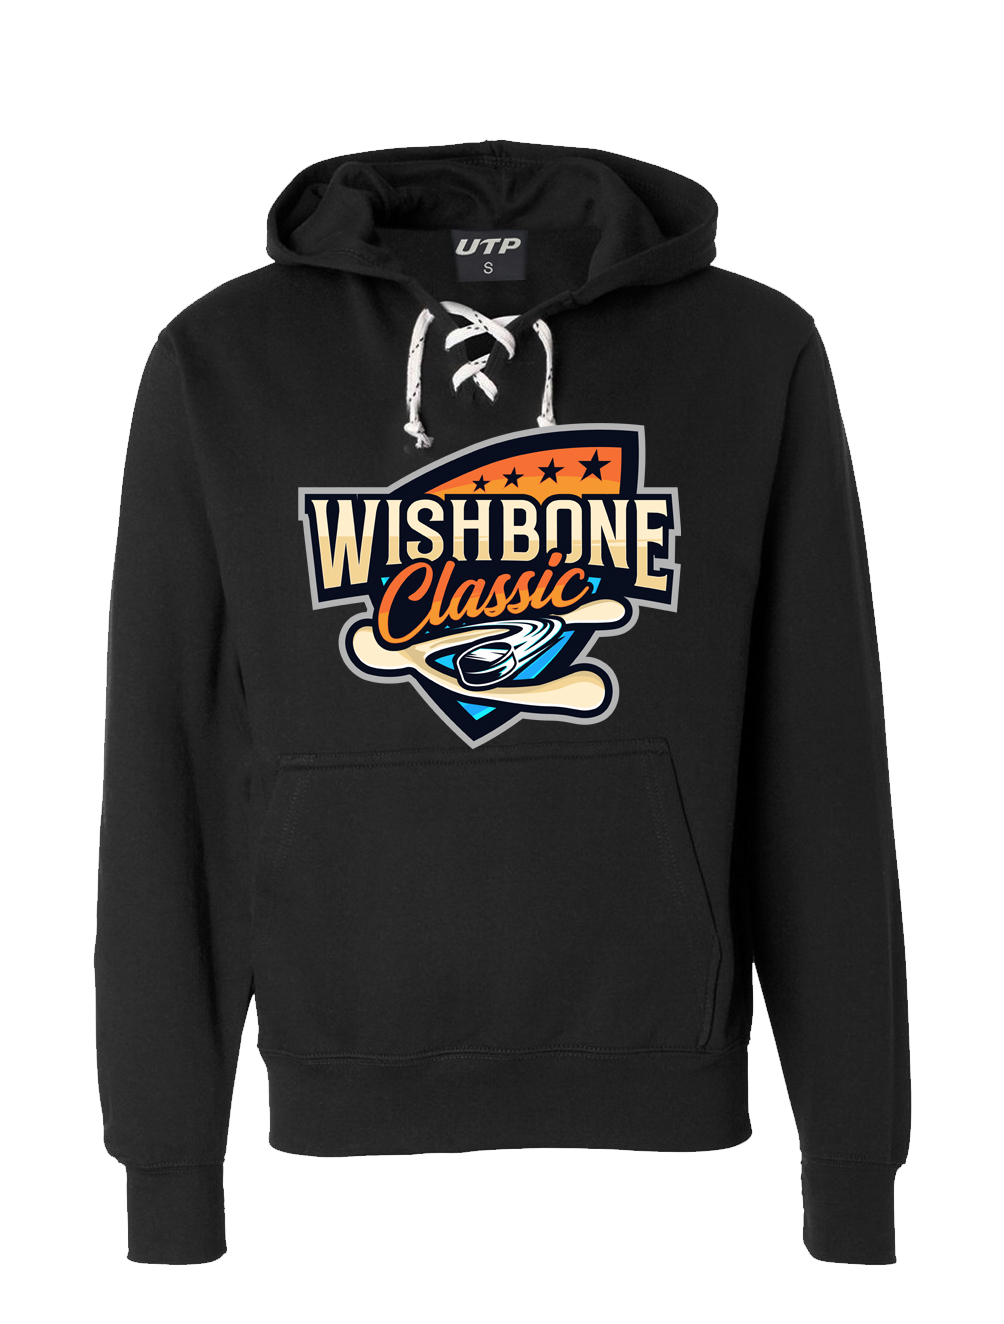 Wishbone Classic Black Hoodie